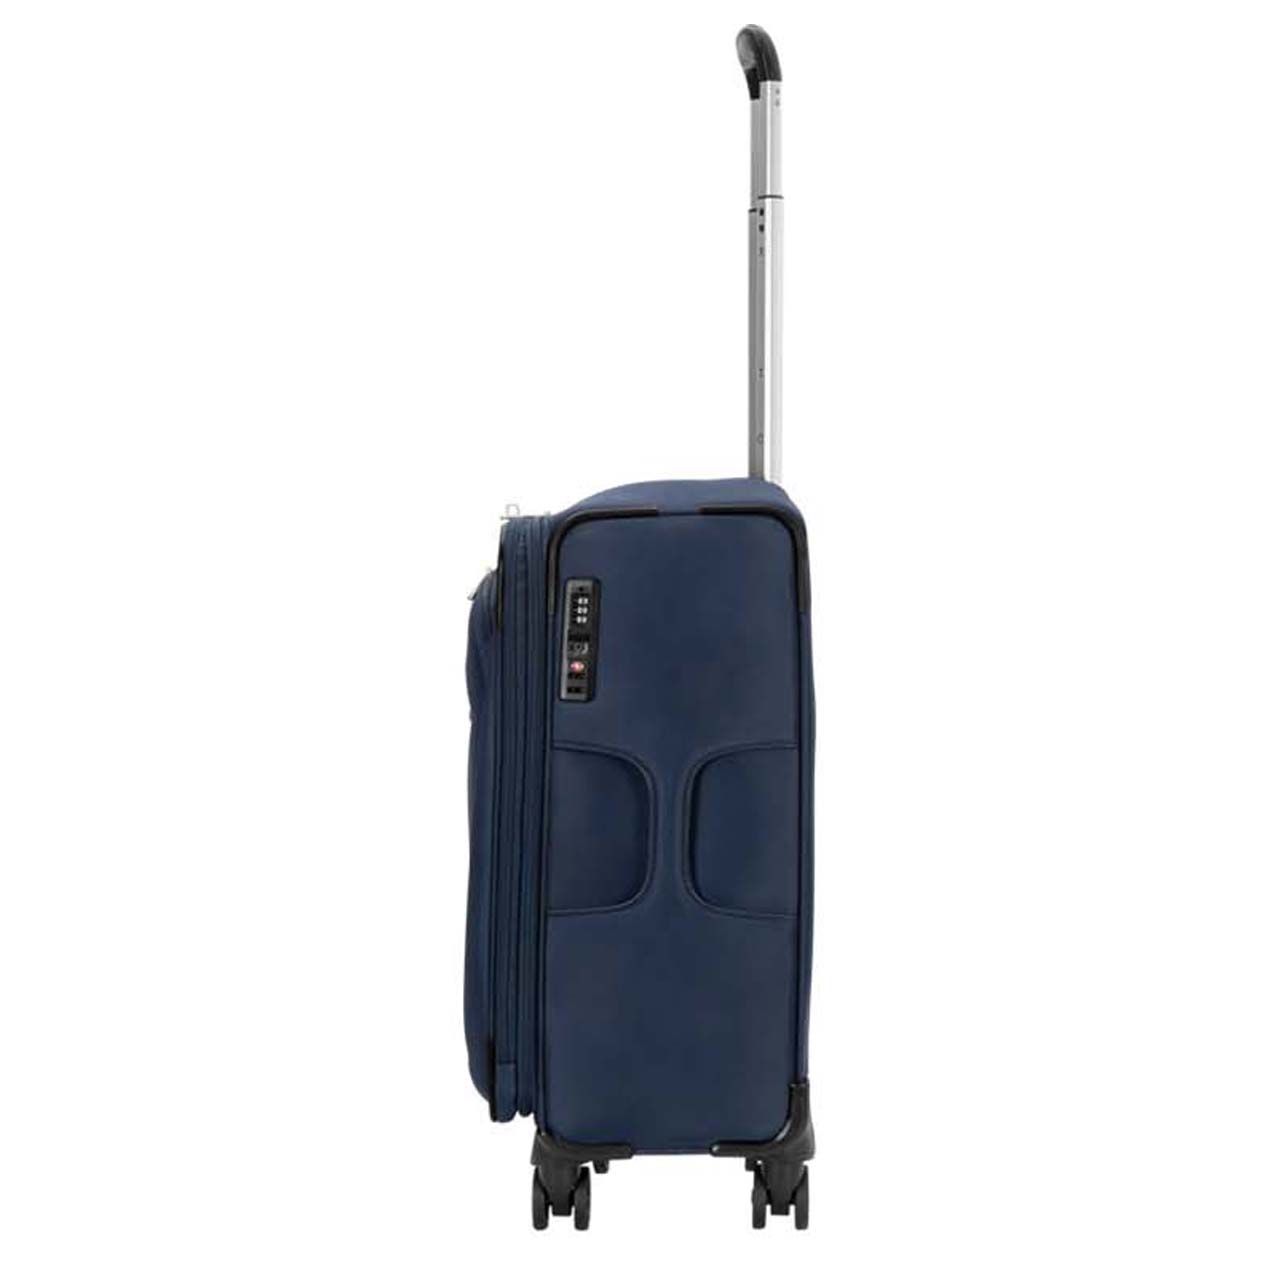 چمدان نیلپر مدل آوان کد 700680 - 111 سایز کوچک -  - 5